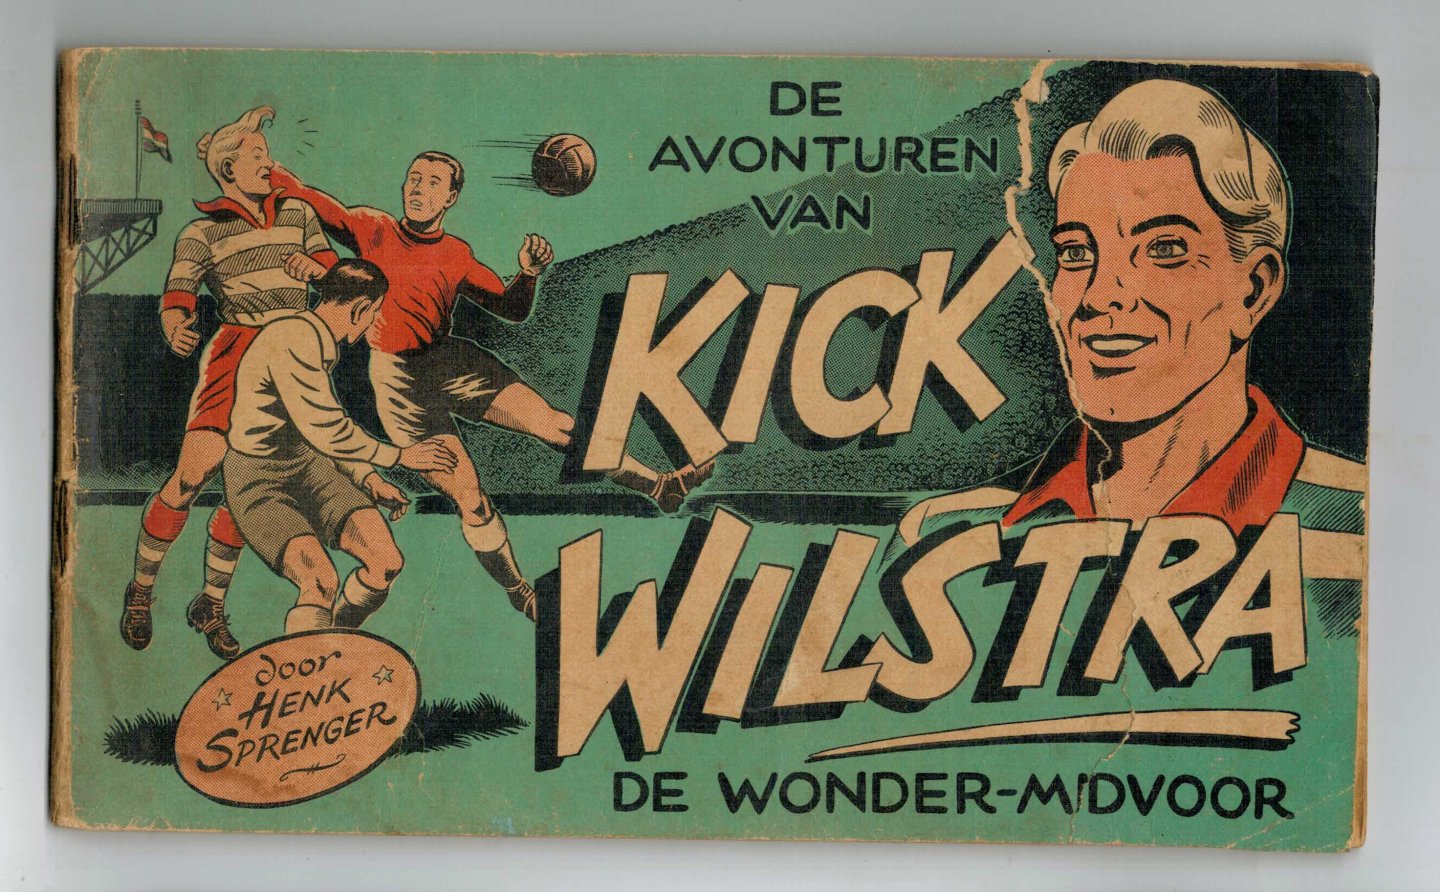 Sprenger, Henk - Kick Wilstra no. 1: De avonturen van wonder-midvoor Kick Wilstra deel 1 eerste druk geen uitgever vermeld